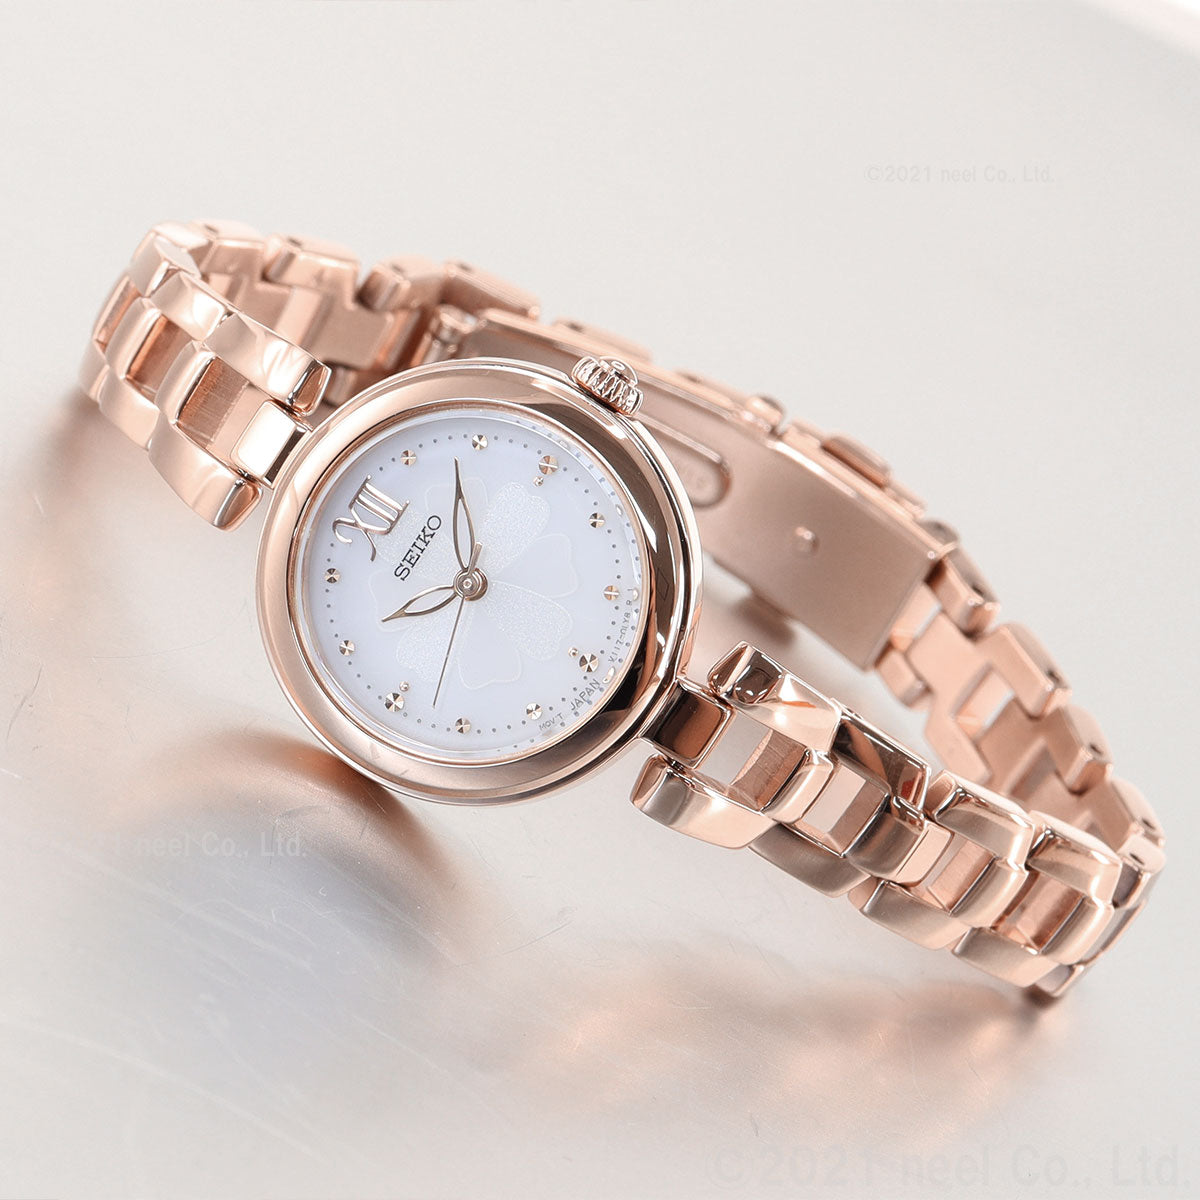 セイコー セレクション SEIKO SELECTION ソーラー 腕時計 レディース SWFA196